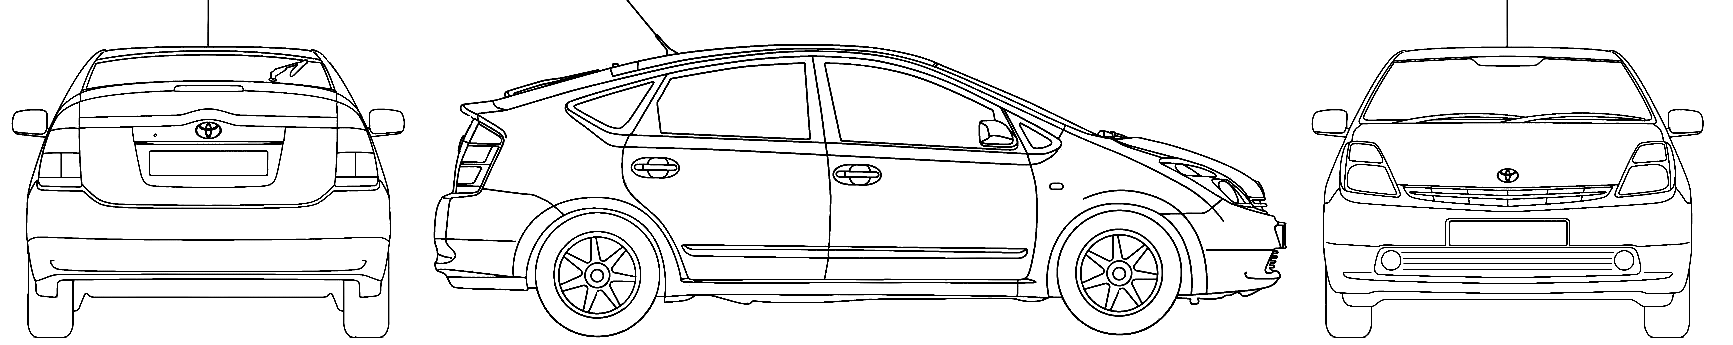 Toyota prius drawing